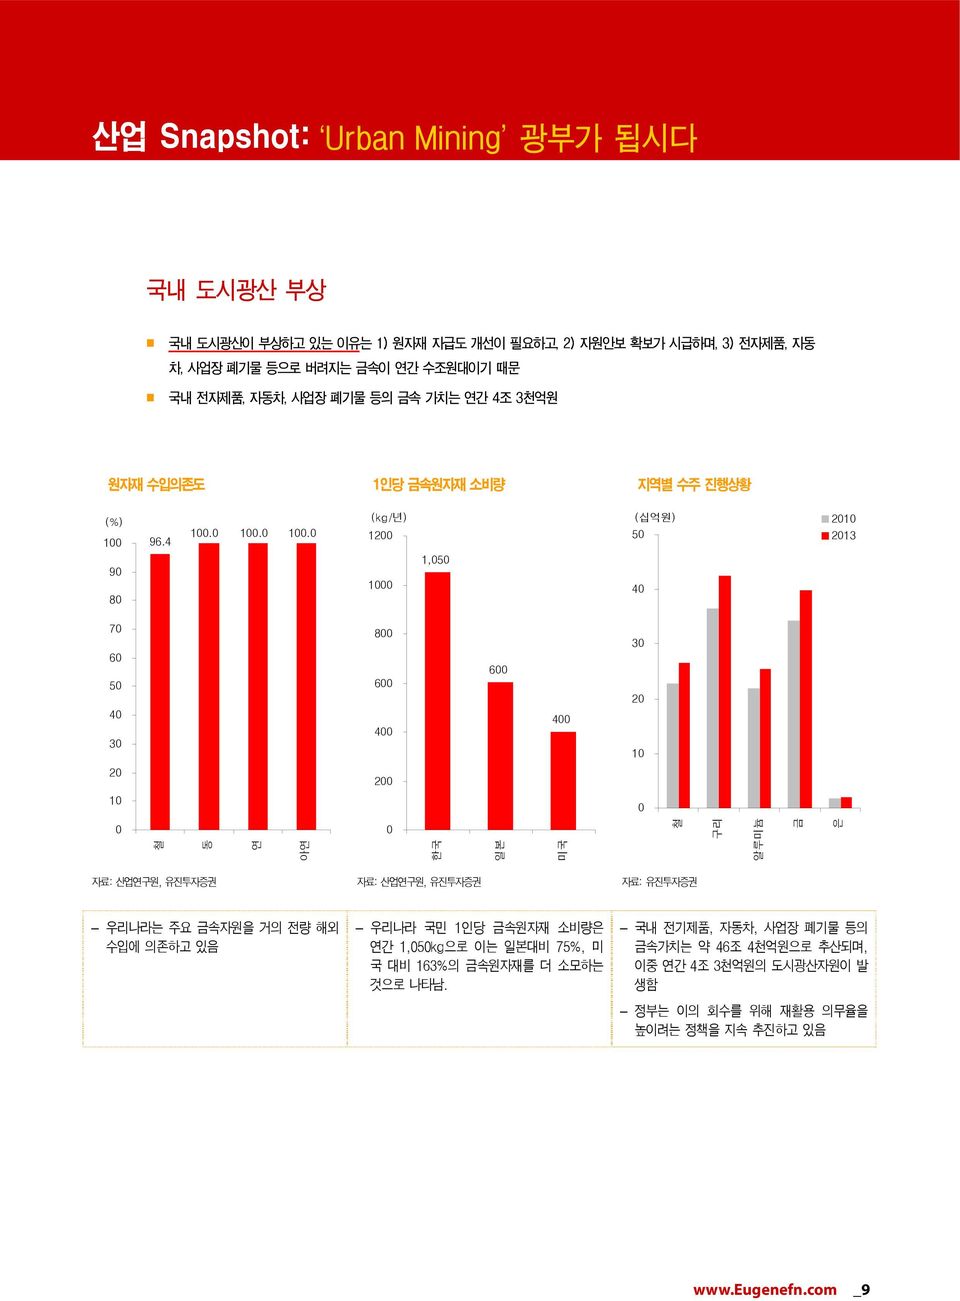 당 금속원자재 소비량 지역별 수주 진행상황 (%) 1 